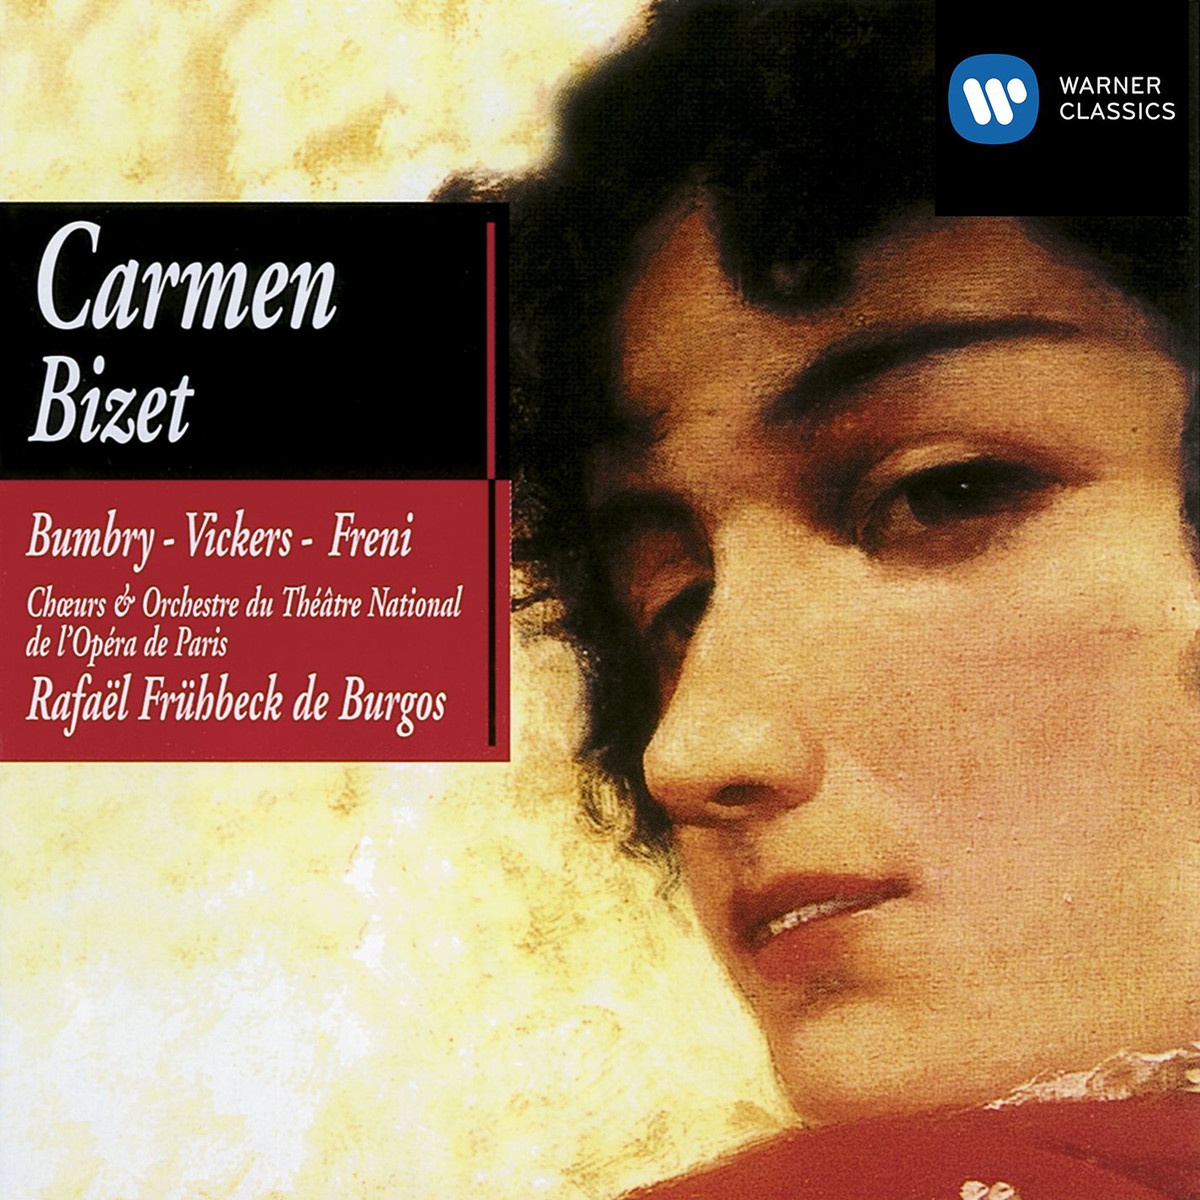 Carmen (1990 Digital Remaster), ACT 1: Attends un peu...Au secours!